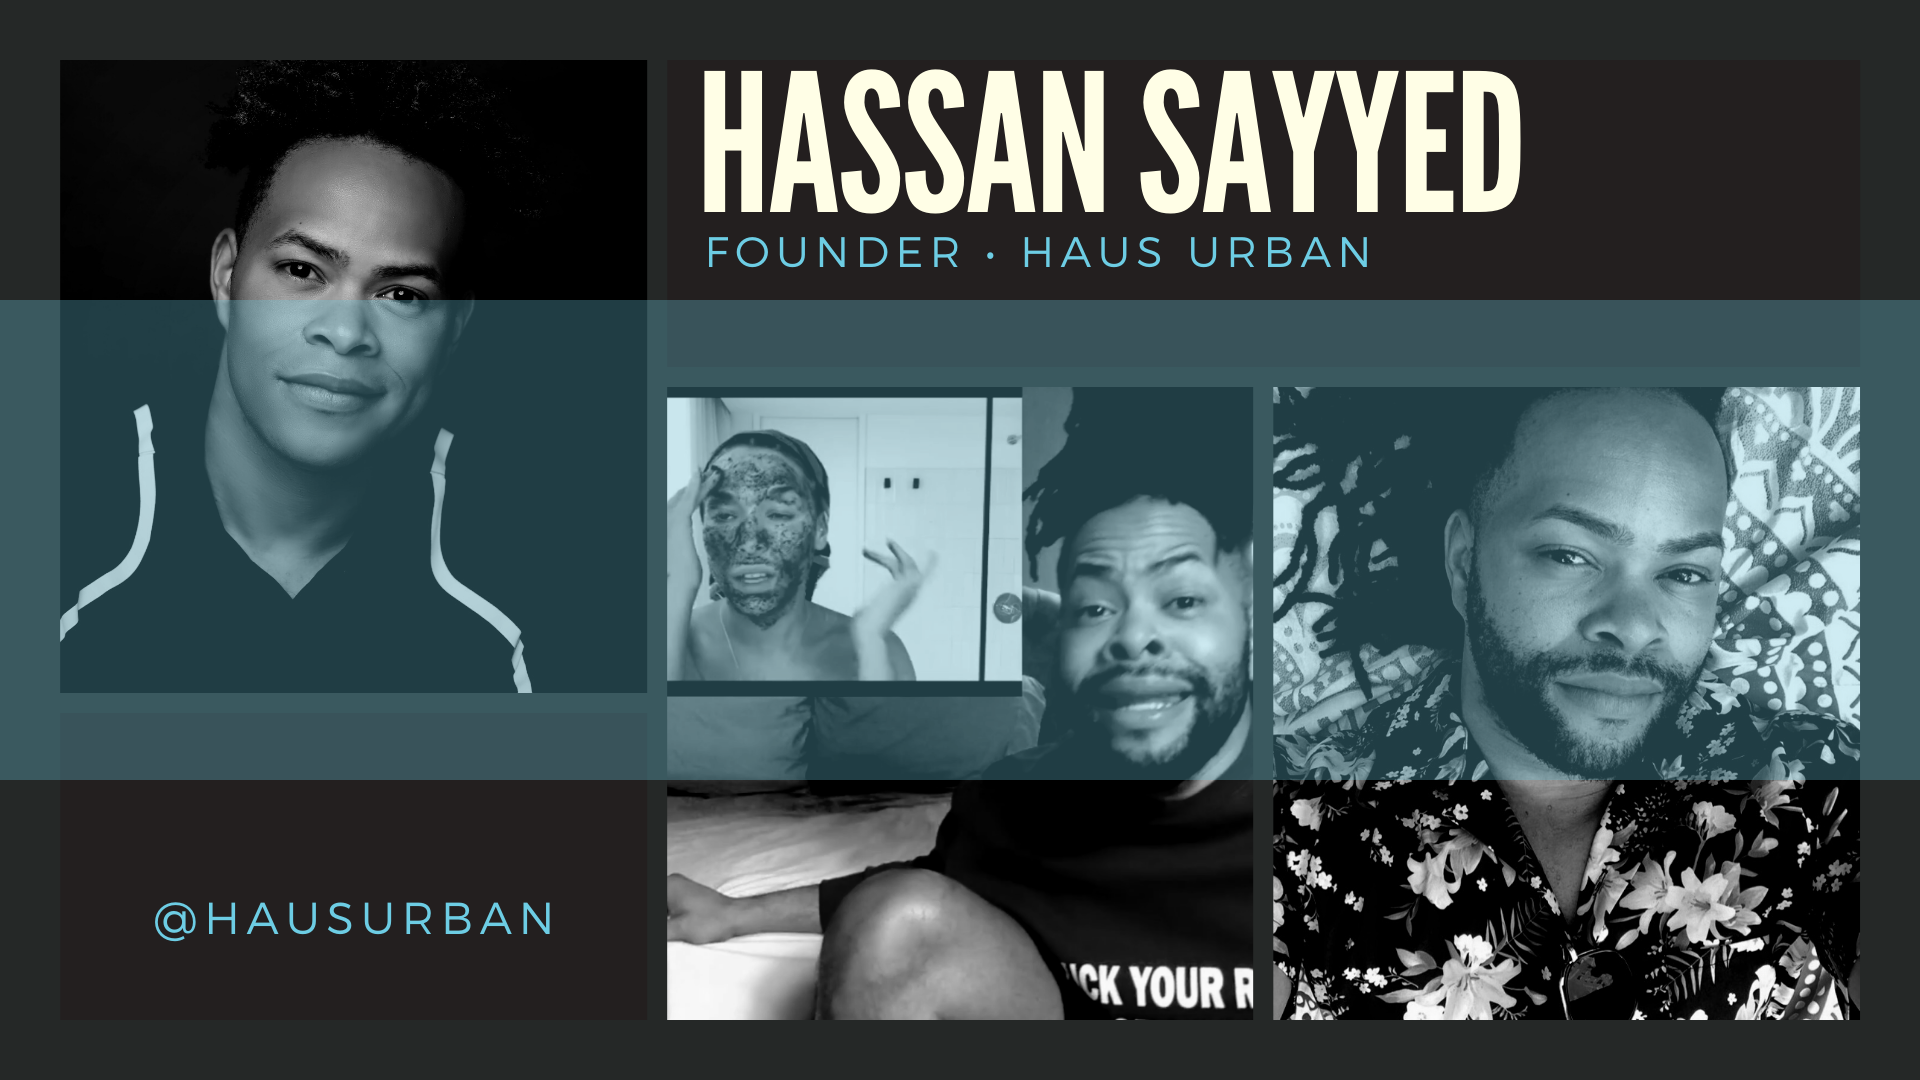 Hassan Sayyed